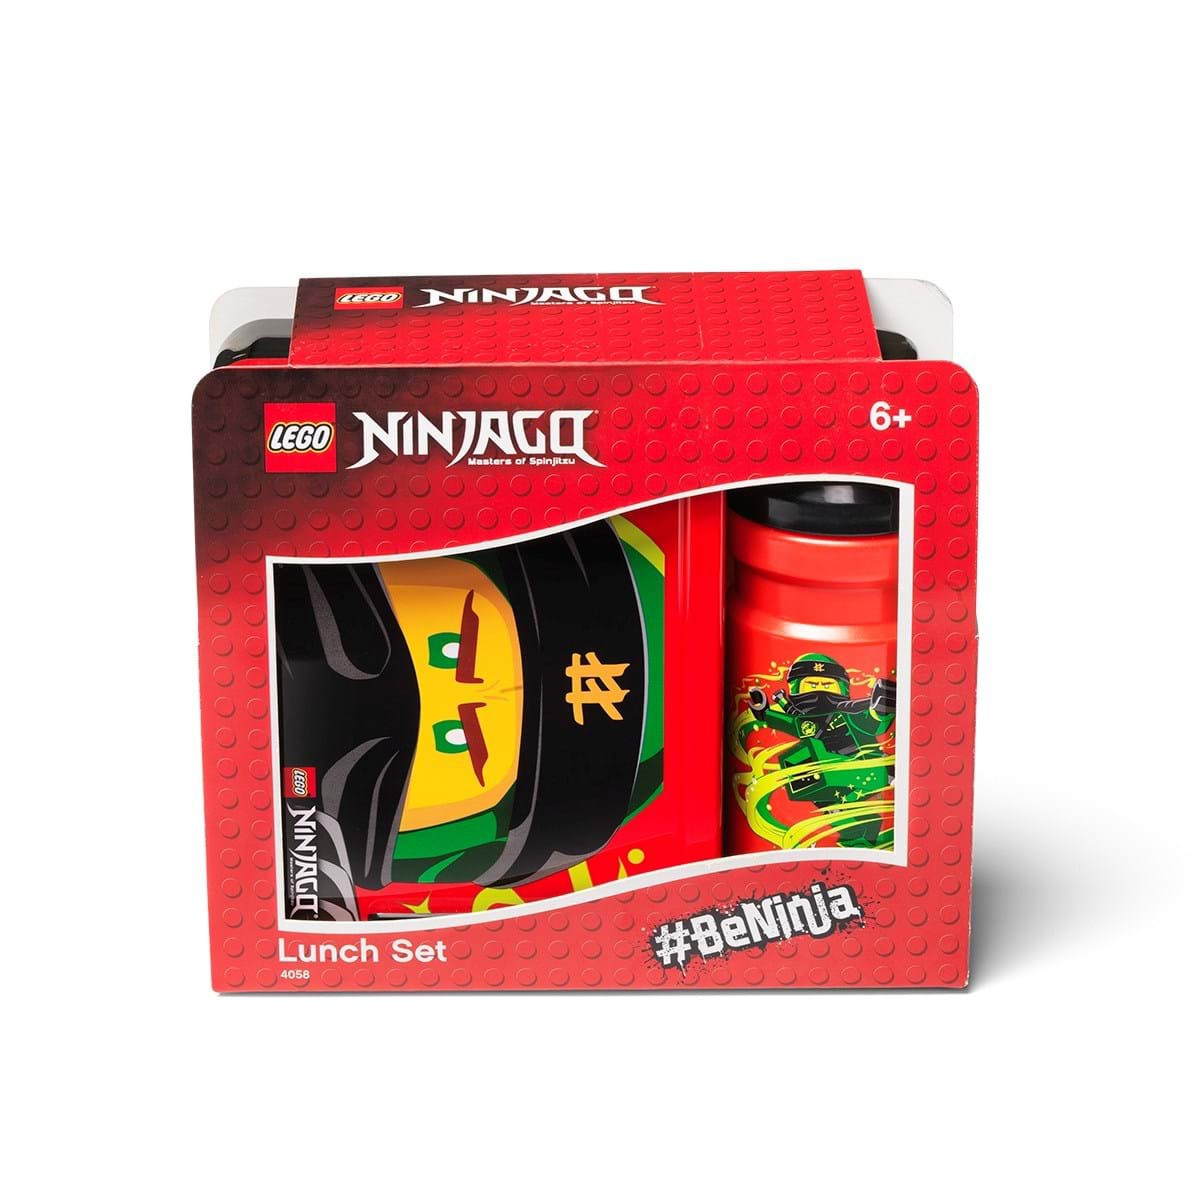 Saga skarpt Snazzy LEGO Madkassesæt Ninjago